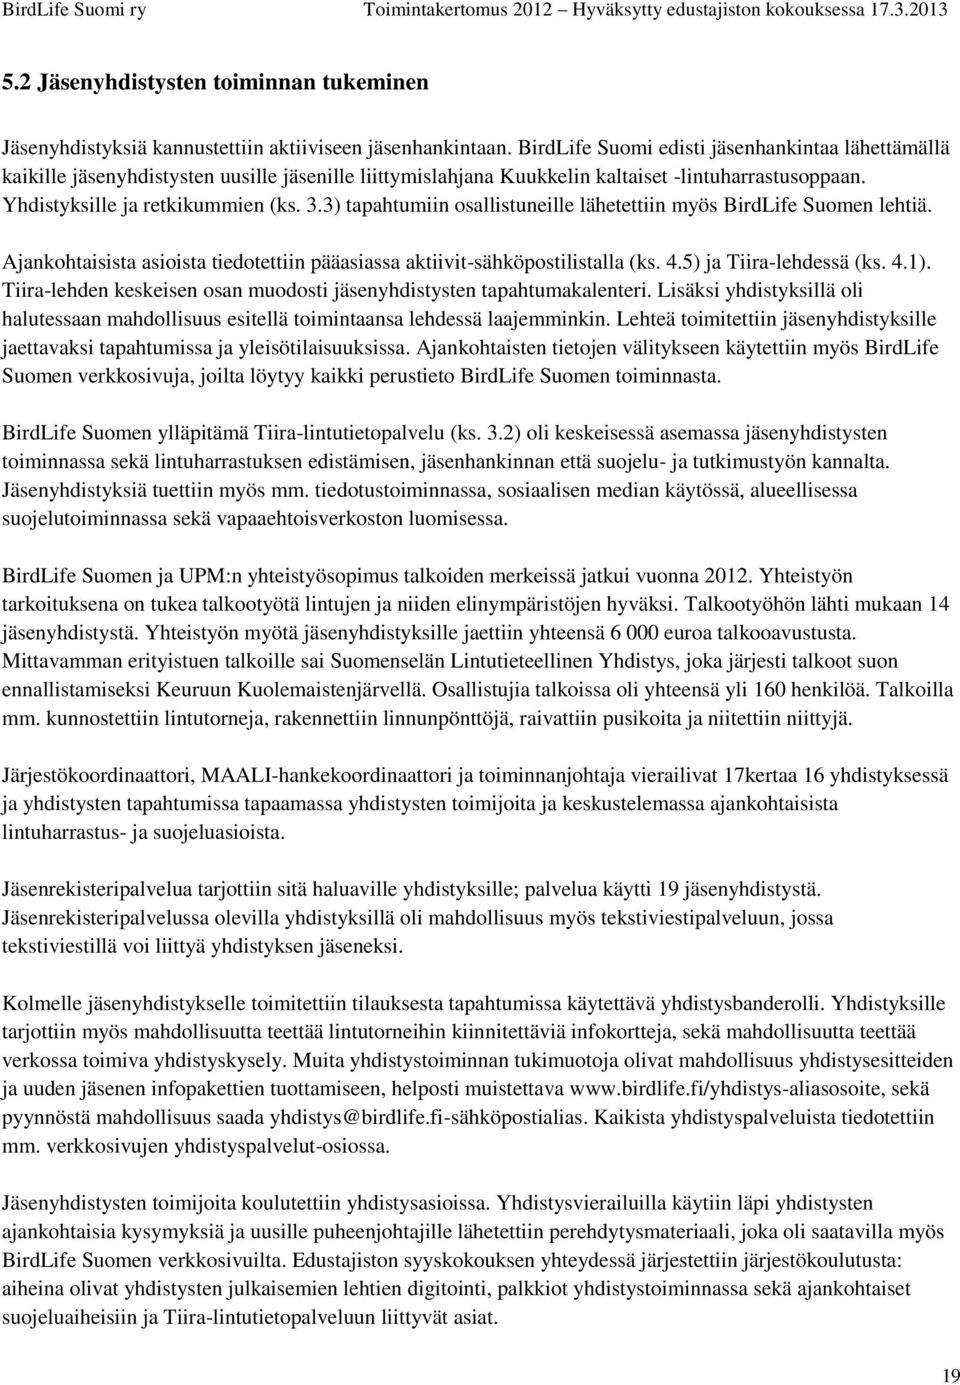 3) tapahtumiin osallistuneille lähetettiin myös BirdLife Suomen lehtiä. Ajankohtaisista asioista tiedotettiin pääasiassa aktiivit-sähköpostilistalla (ks. 4.5) ja Tiira-lehdessä (ks. 4.1).